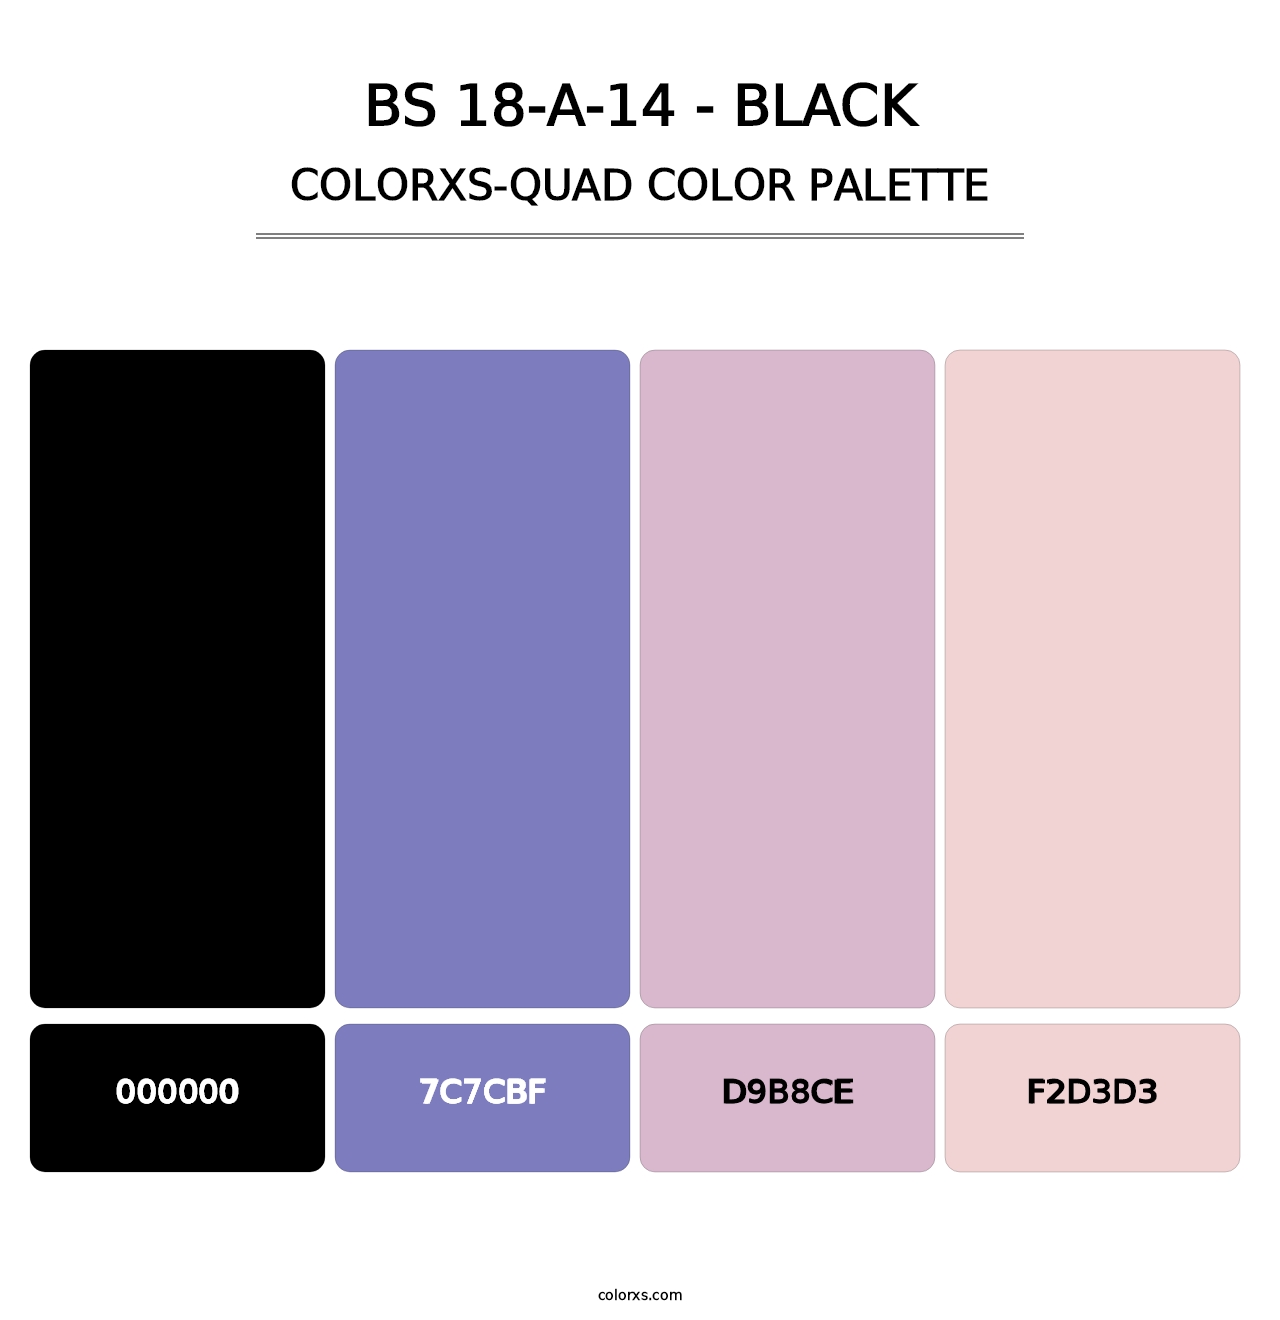 BS 18-A-14 - Black - Colorxs Quad Palette